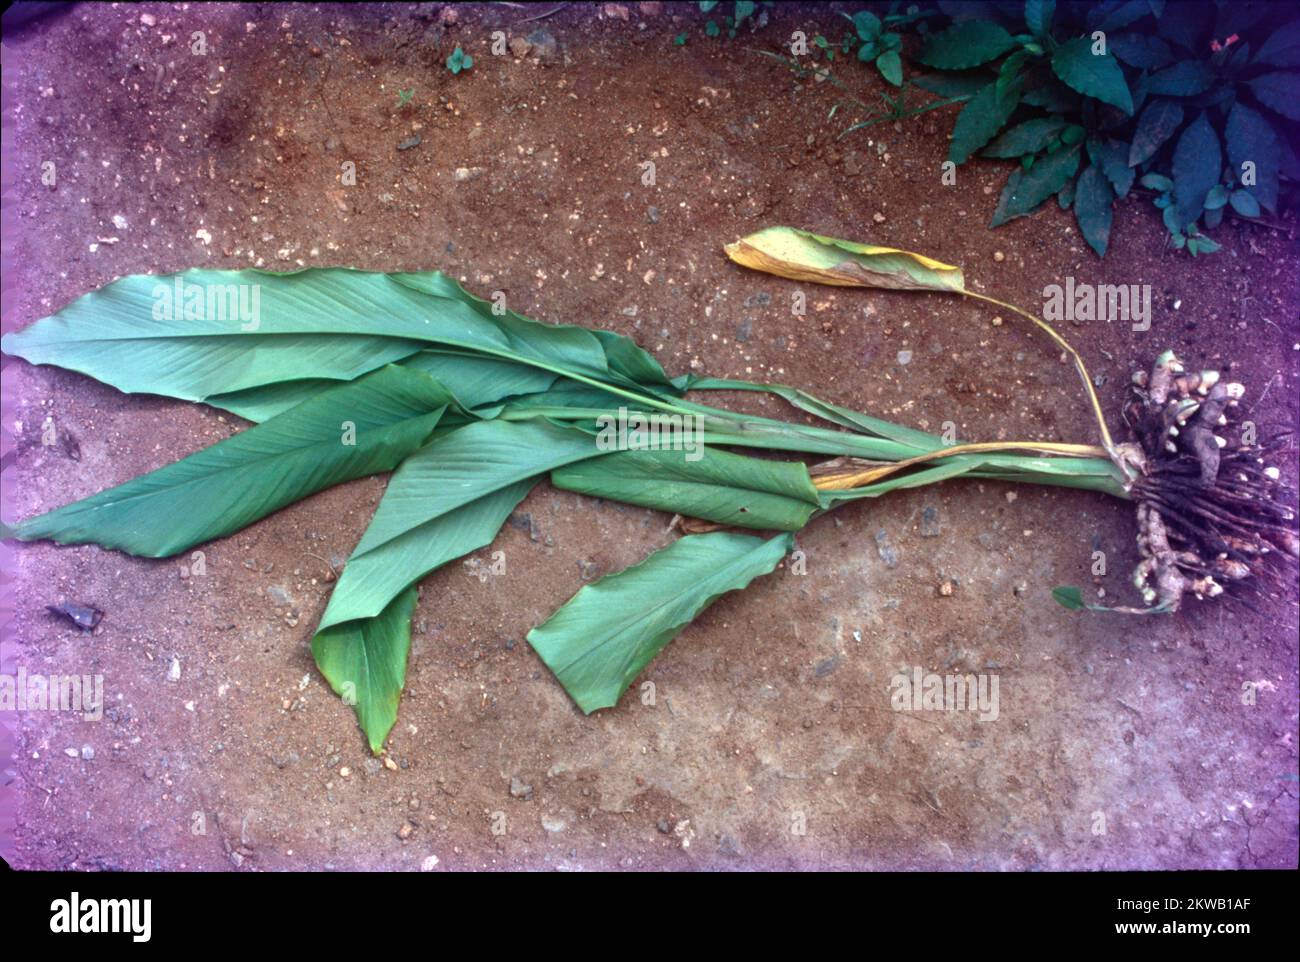 La curcuma è una pianta fiorita, Curcuma longa, della famiglia dello zenzero, Zingiberaceae, nomi comuni: Curcuma, radice curcuma, curcuma dello zafferano indiano, Una pianta della famiglia dello zenzero, è originaria dell'Asia sudorientale, principalmente in India. Il suo rizoma (gambo sotterraneo) è usato come una spezia culinaria e storicamente, curcuma è stato usato in Ayurveda e in altri sistemi medici indiani tradizionali. Foto Stock